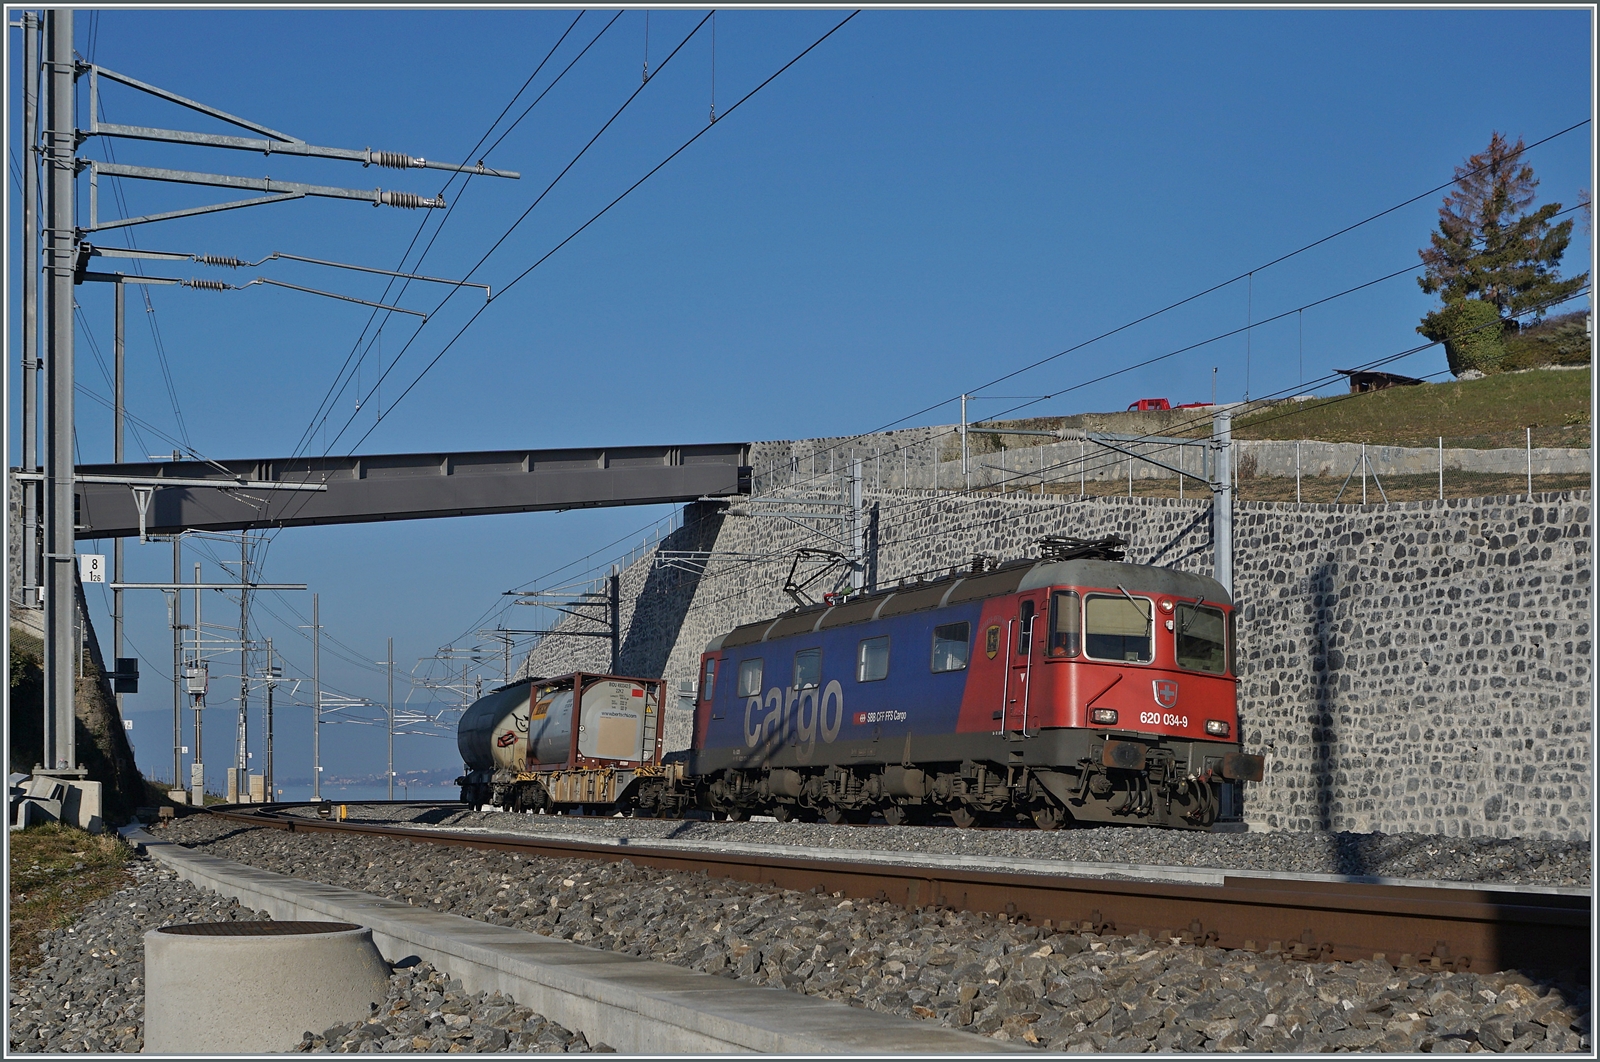 Zwei Bilder der SBB Re 6/6 16688 (Re 620 088-6)  Aarburg-Oftringen  an der praktisch selben Stelle; doch wie man leicht feststellen kann, hat sich nicht nur das Wetter geändert... Erneut fährt die SBB Re 620 088-6 mit ein einem Güterzug in den Bahnhof von Cully ein. Die Umbauarbeiten sind praktisch abgeschlossen. Die Ausfahrt Richtung Lausanne (Blickrichtung) wurde für die Regionalzüge die nun zusätzlich in Cully beginnen und enden erweitert, was auch zum Ersatz der schöne Steinbogenbrücke geführt hat.

16. Februar 2023